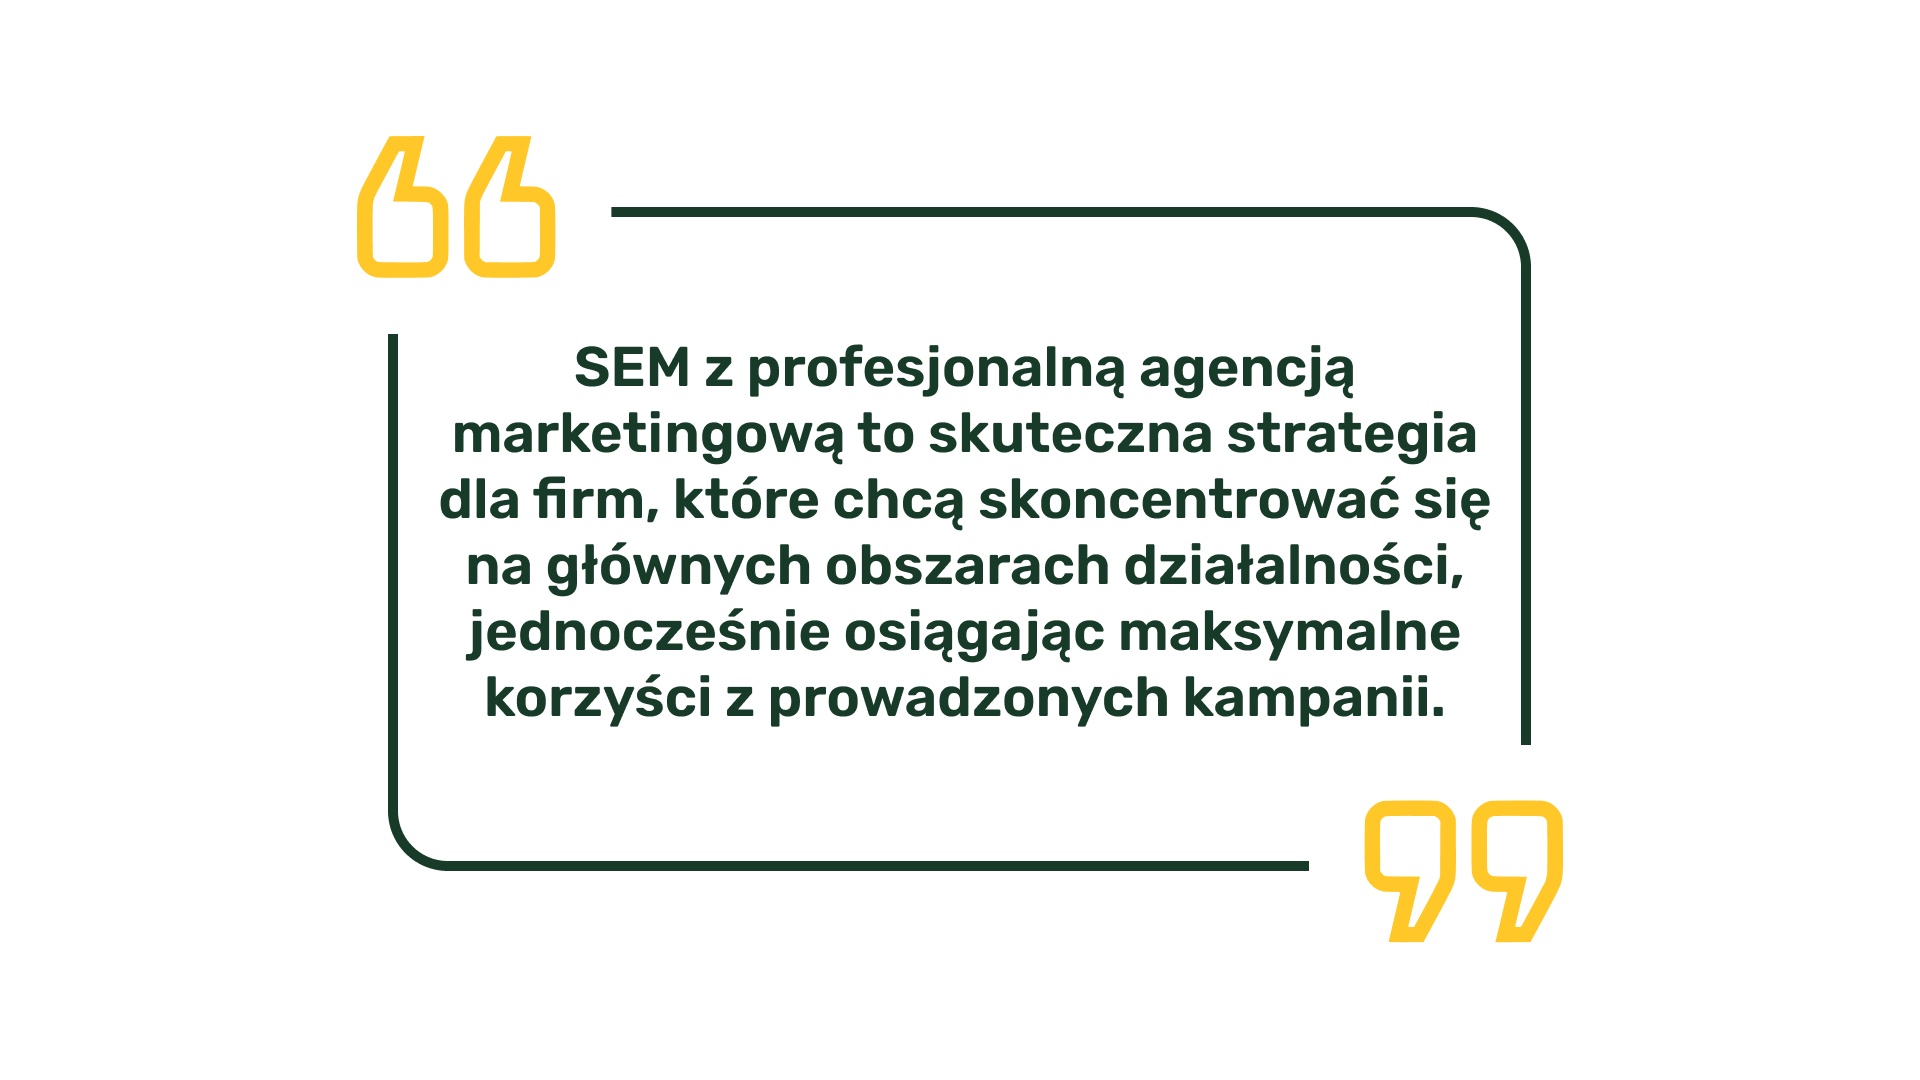 SEM z profesjonalną agencją marketingową to skuteczna strategia dla firm, które chcą skoncentrować się na głównych obszarach działalności, jednocześnie osiągając maksymalne korzyści z prowadzonych kampanii.